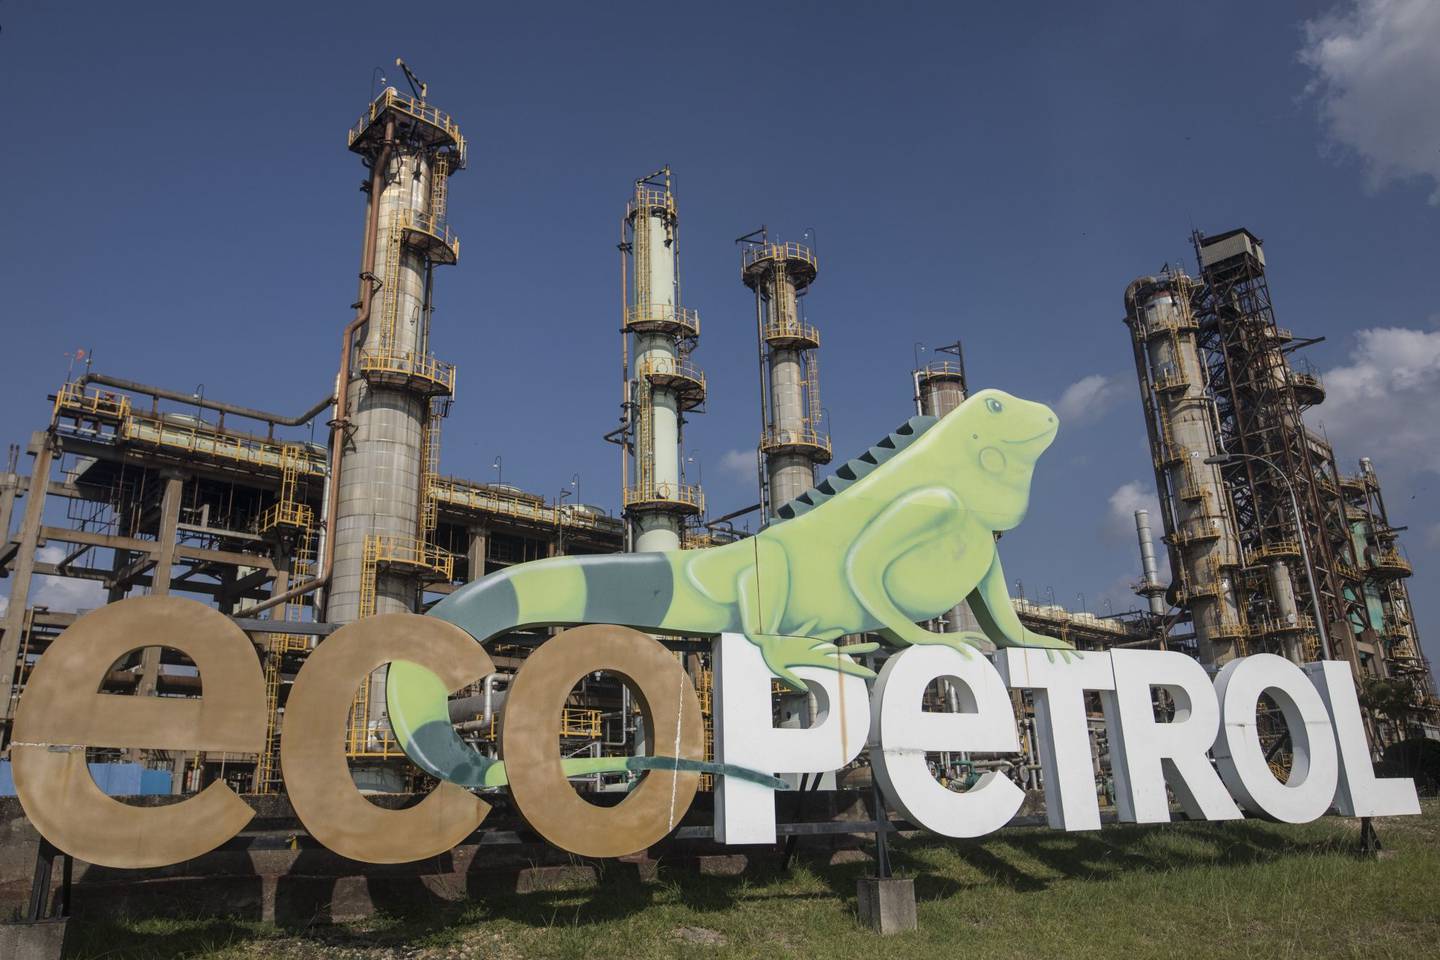 Señalización en la refinería de Ecopetrol Barrancabermeja en Barrancabermeja, Colombia, el martes 15 de febrero de 2022.dfd